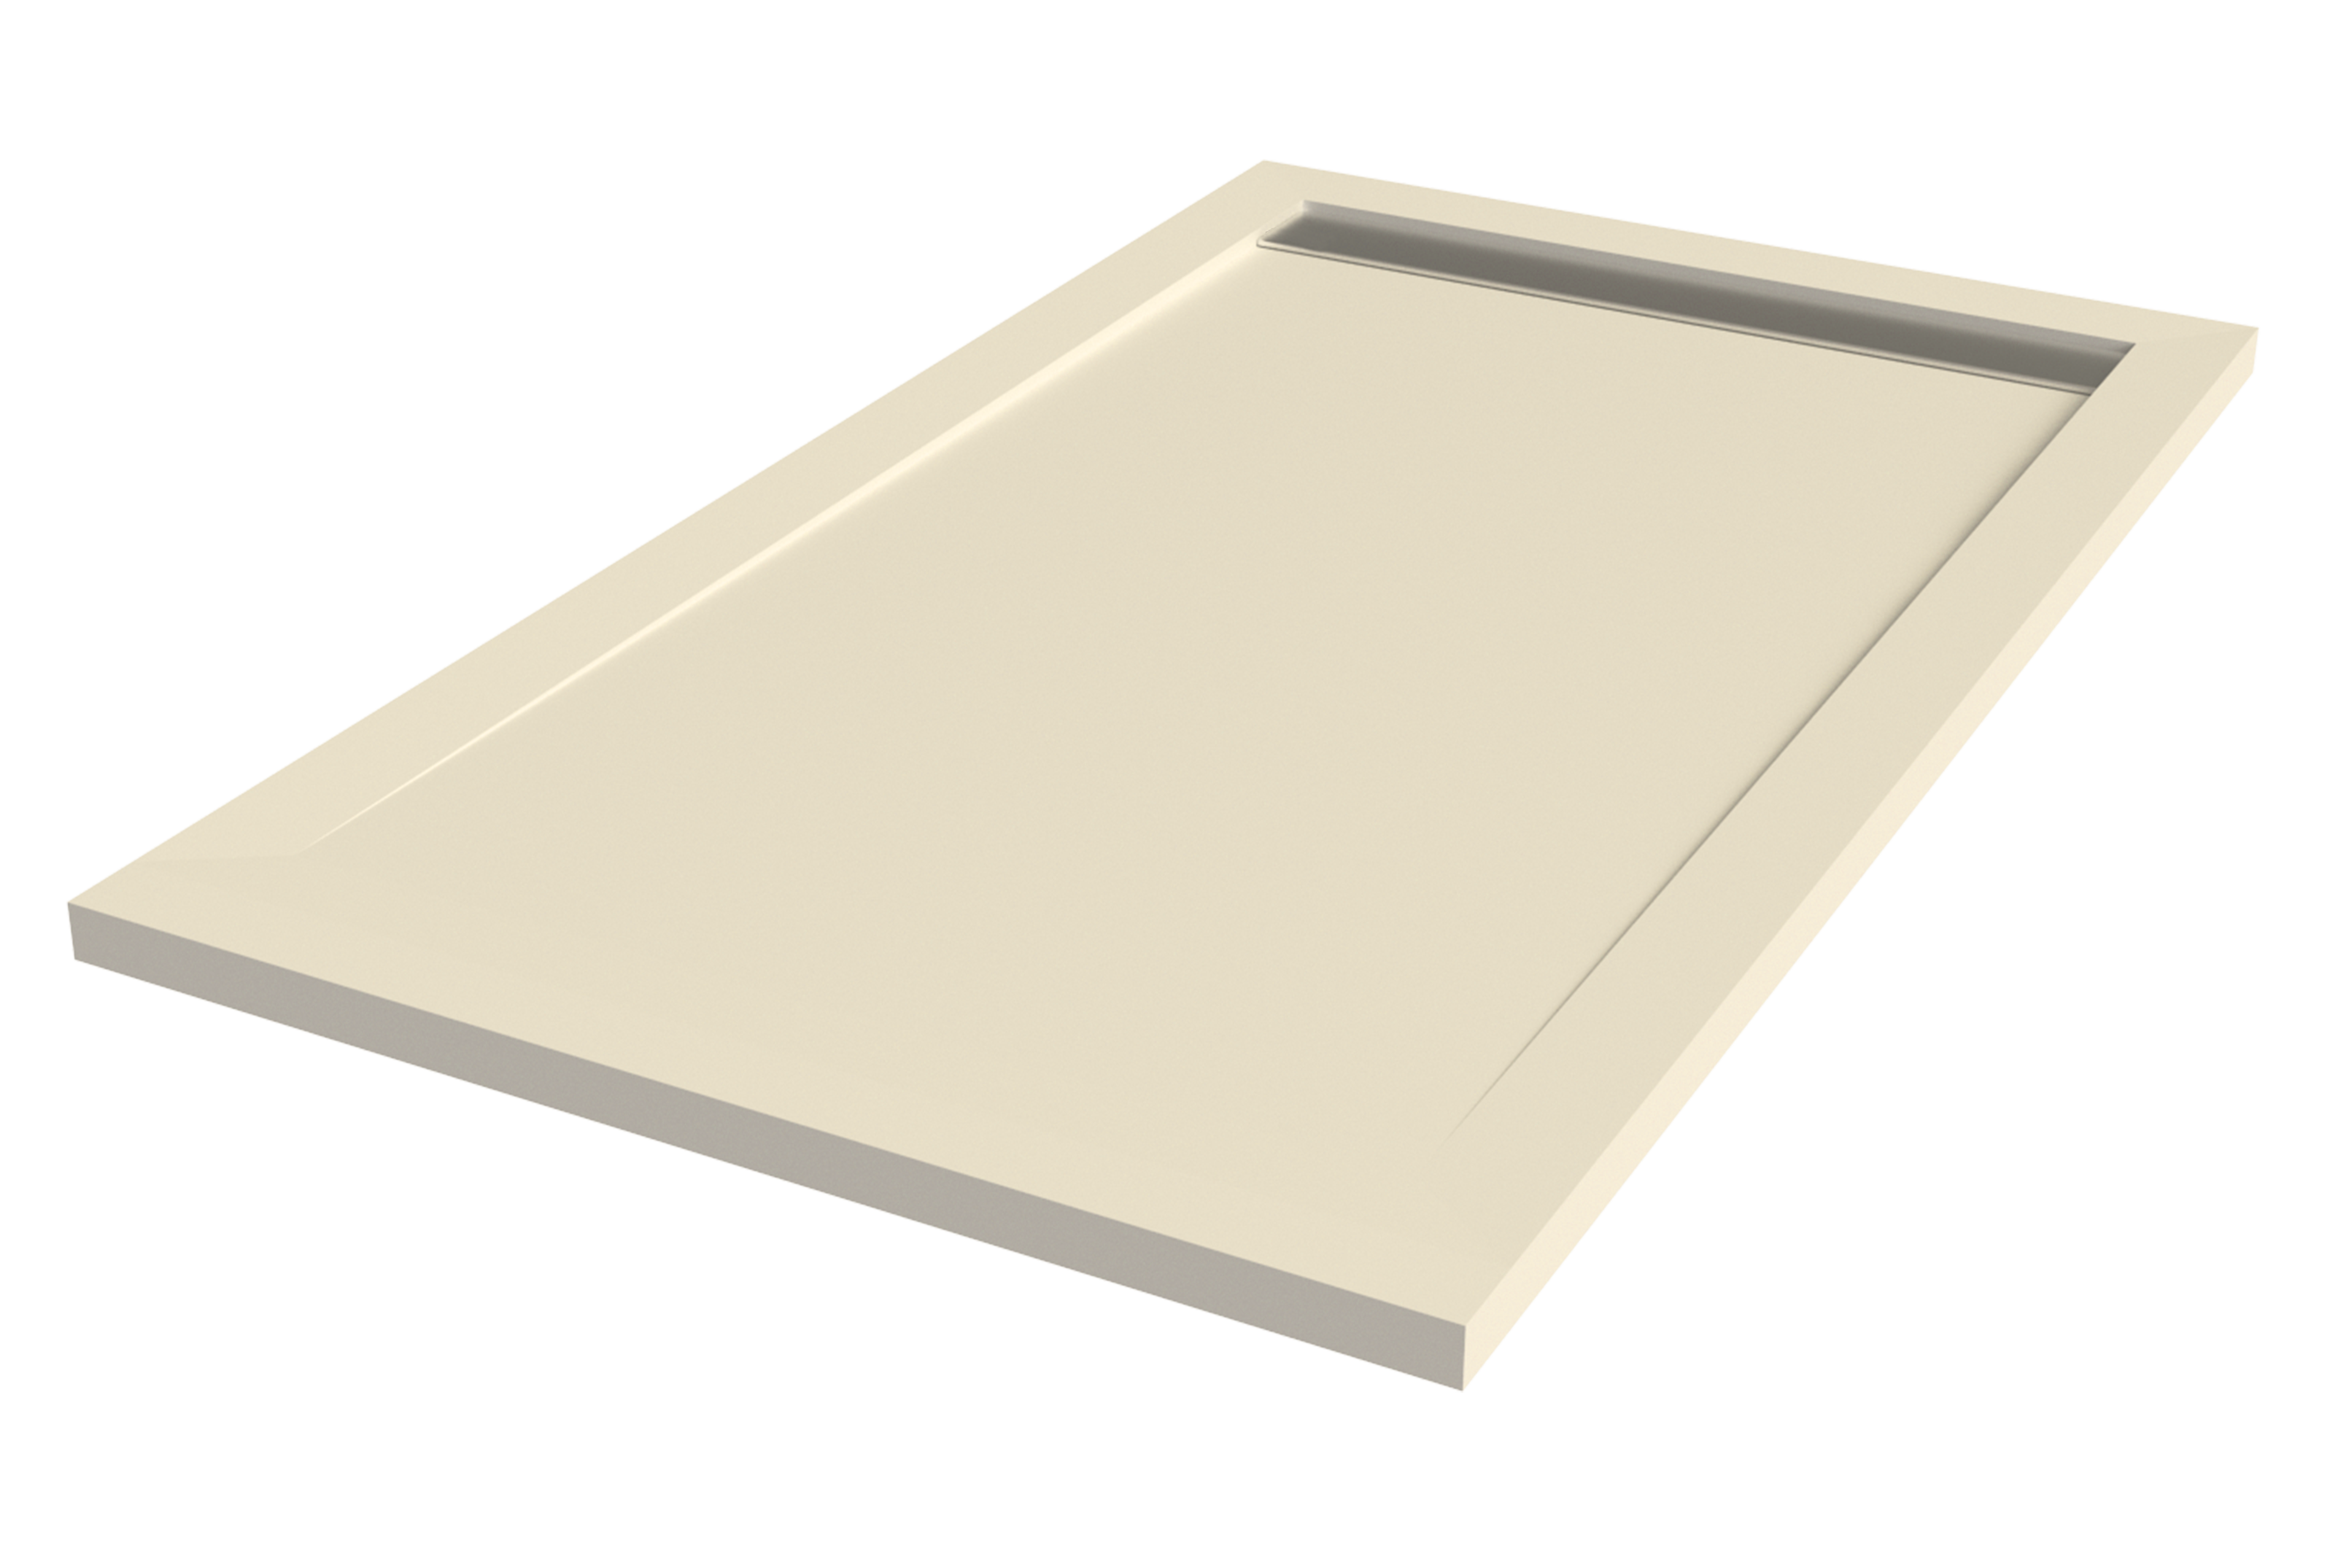 Plato de ducha kaliso 160x100 cm beige